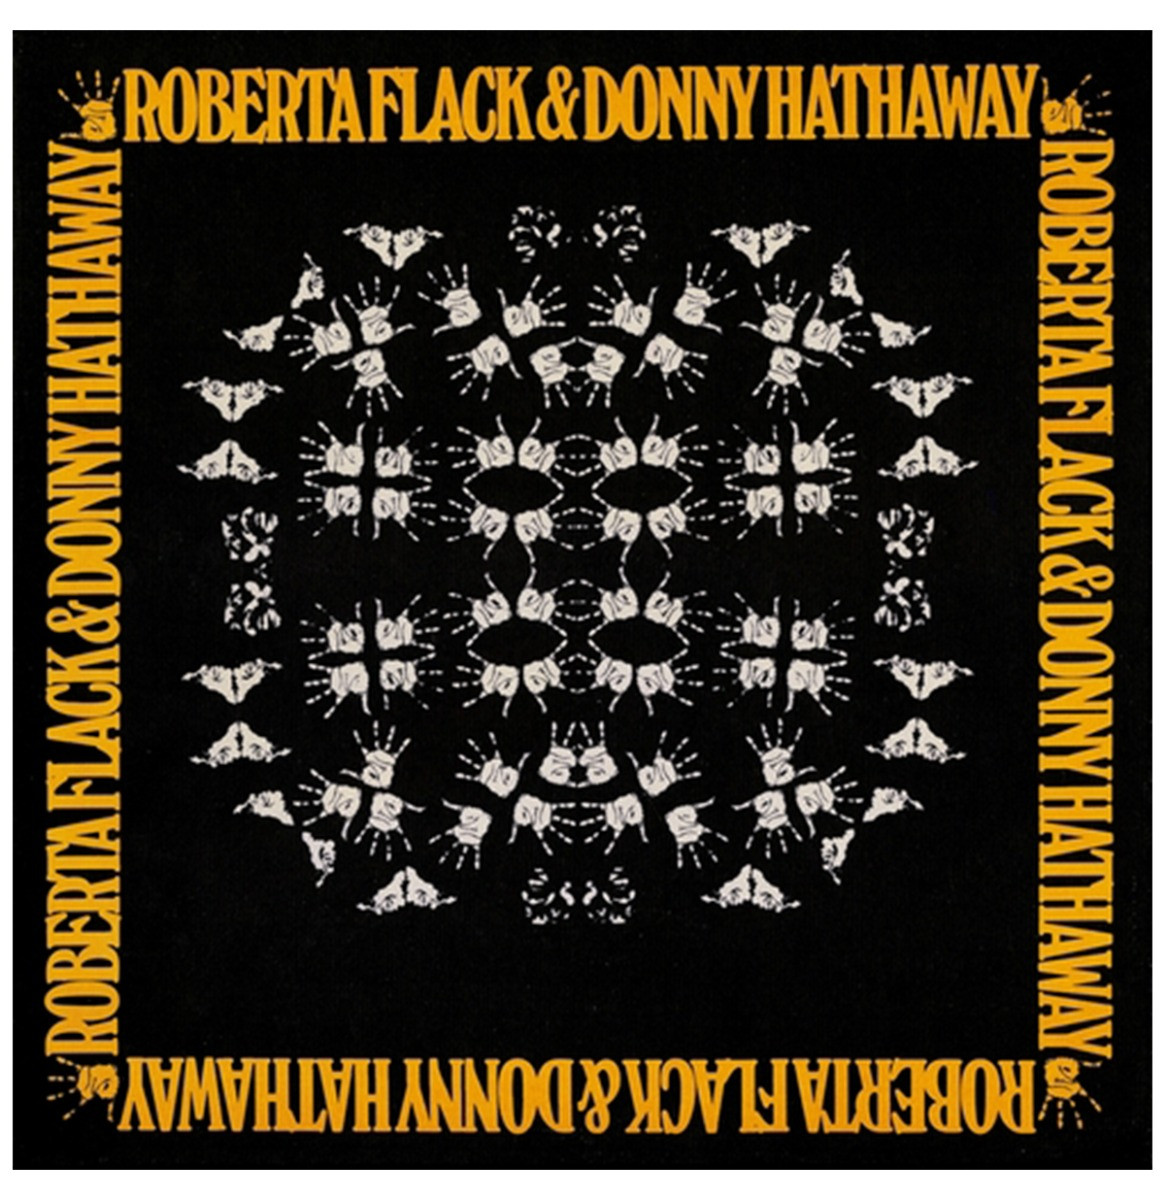 Roberta Flack & Donny - Hathaway LP